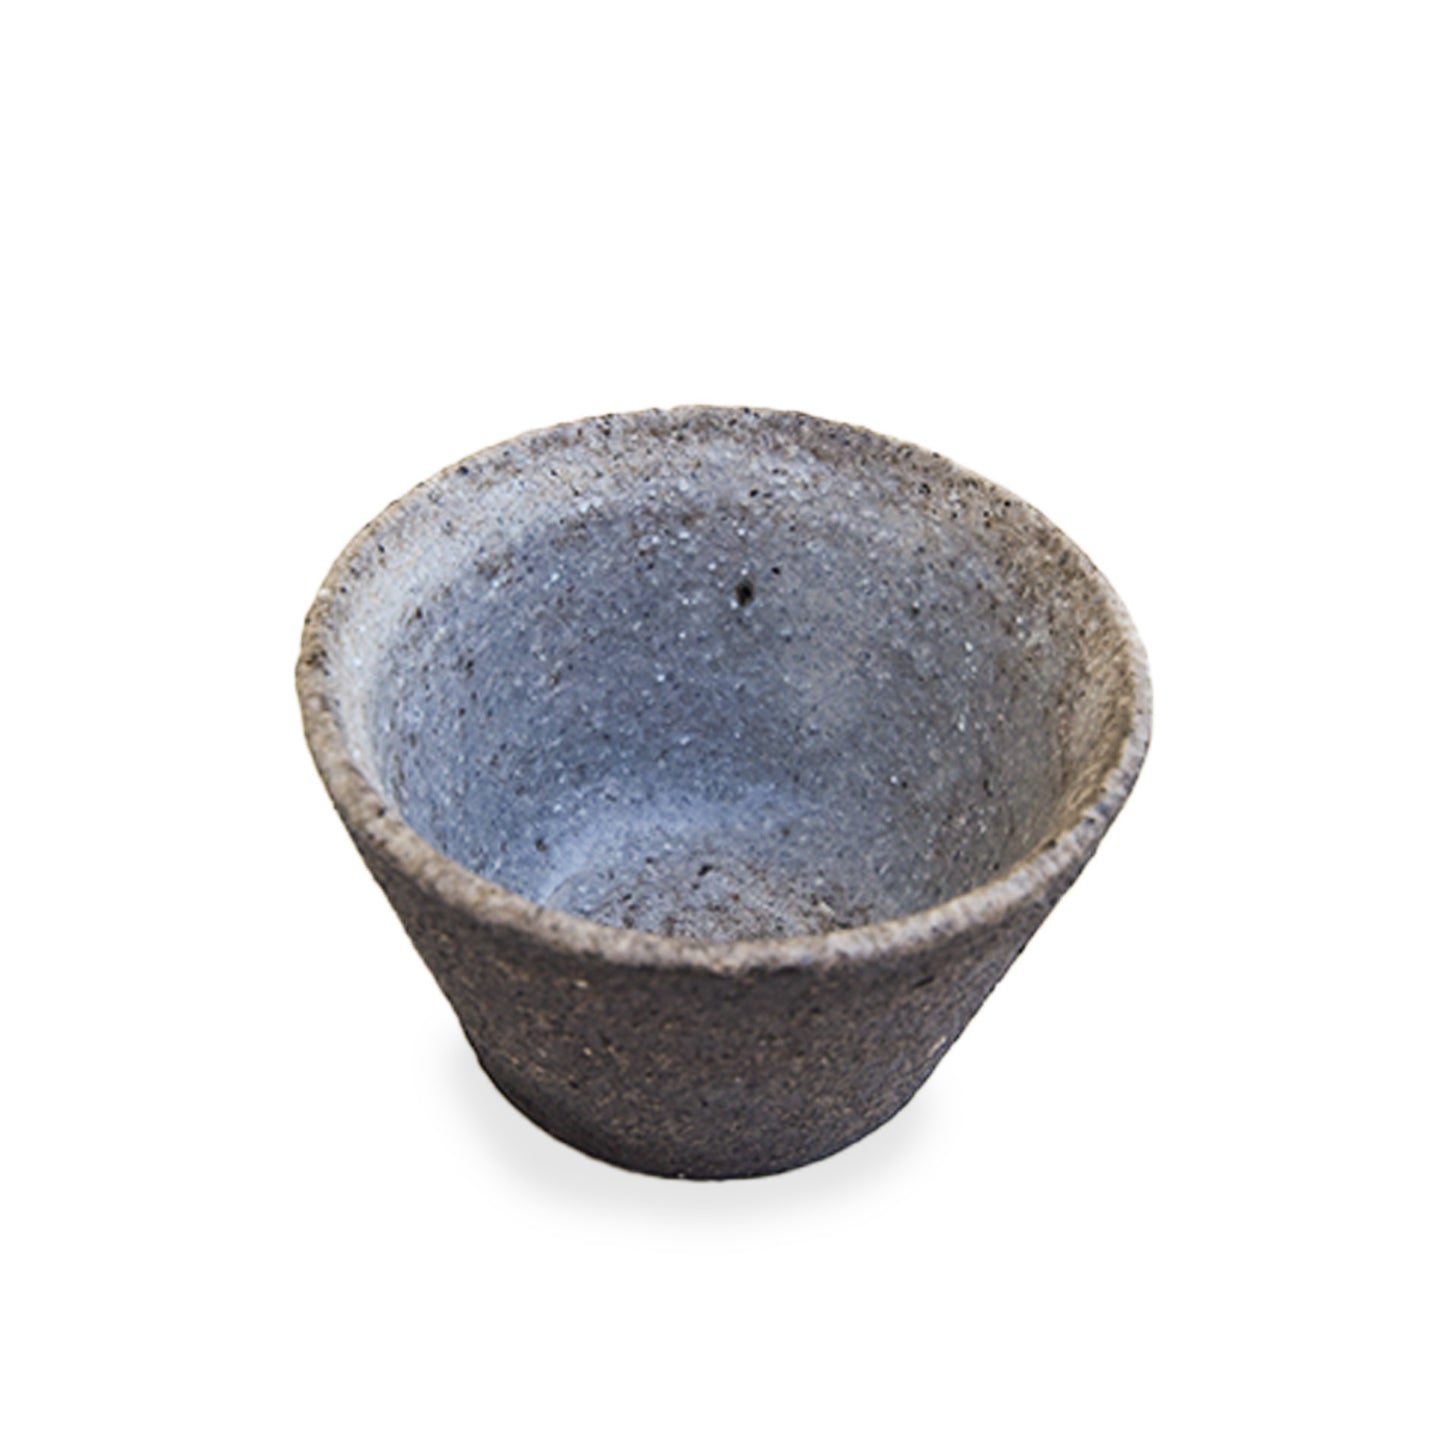 Morito Tatsuruhama 25 Sake Cup